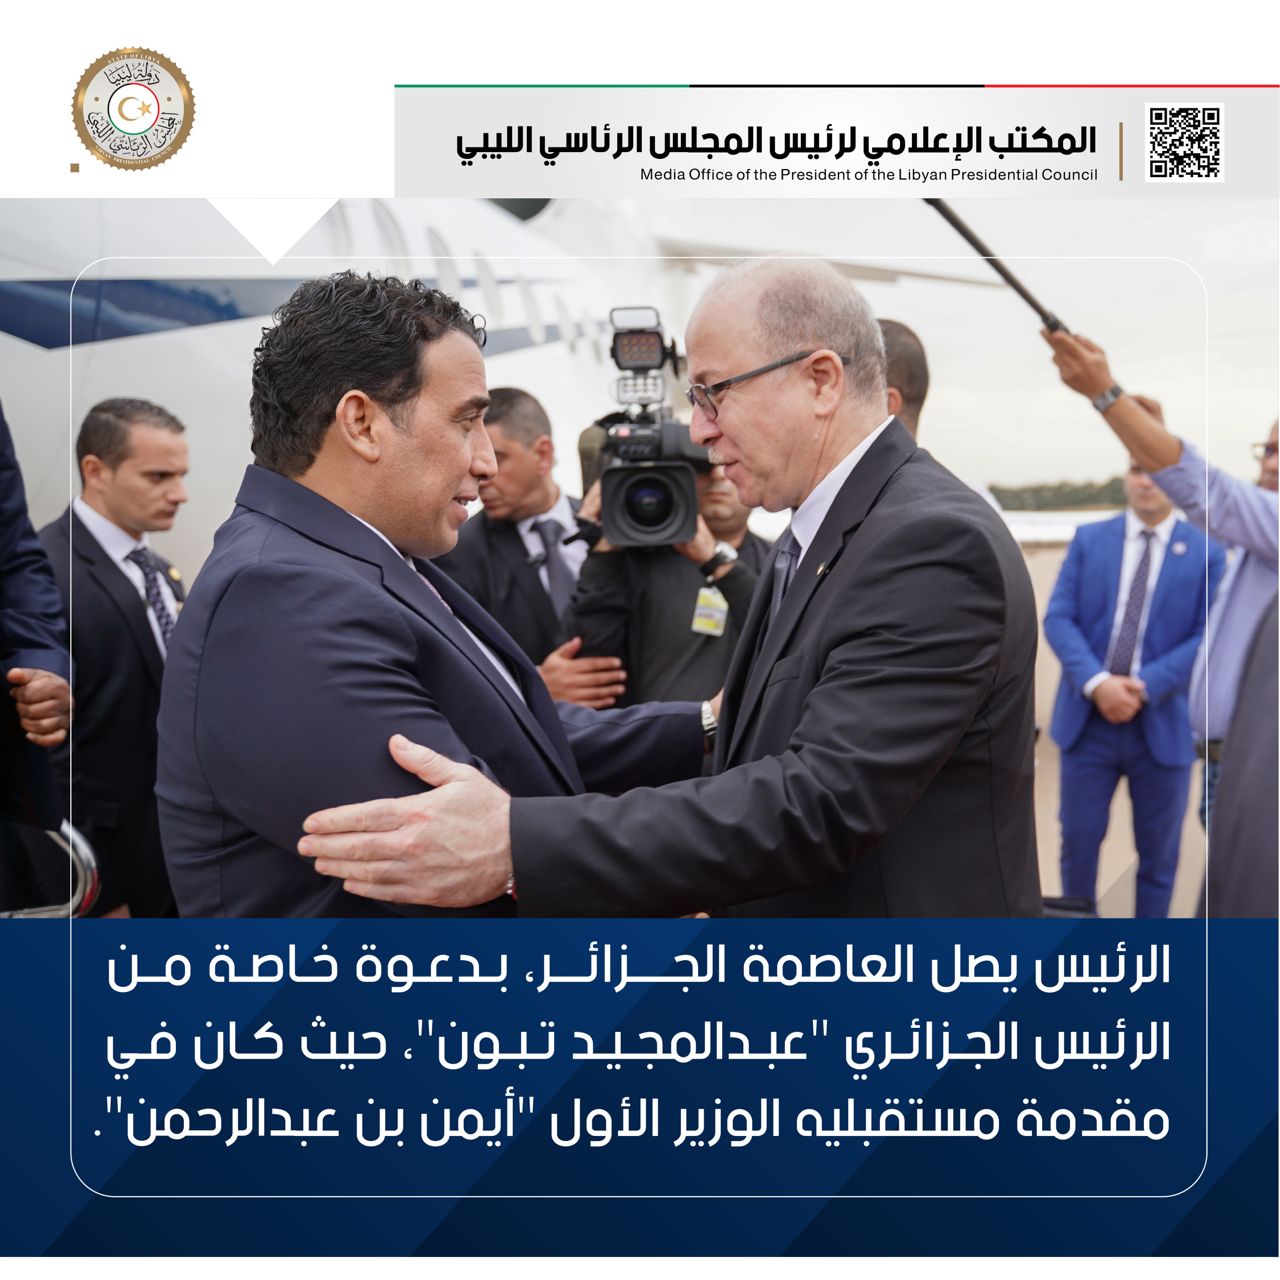 بدعوة خاصة من الرئيس الجزائري .. رئيس المجلس الرئاسي يصل إلى الجزائر